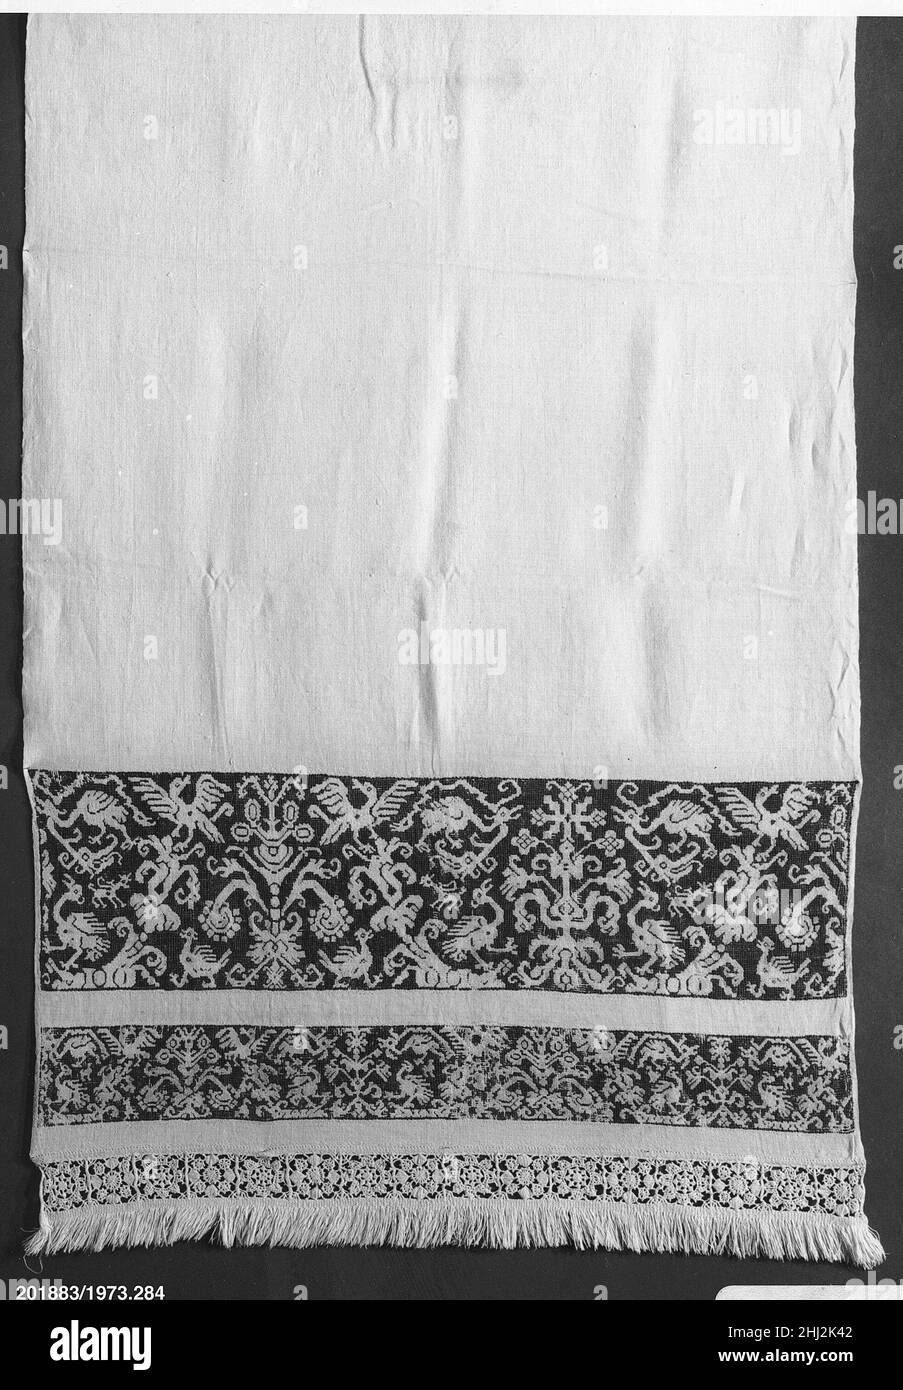 Altar cloth 16th century Italian. Altar cloth 229422 Stock Photo - Alamy